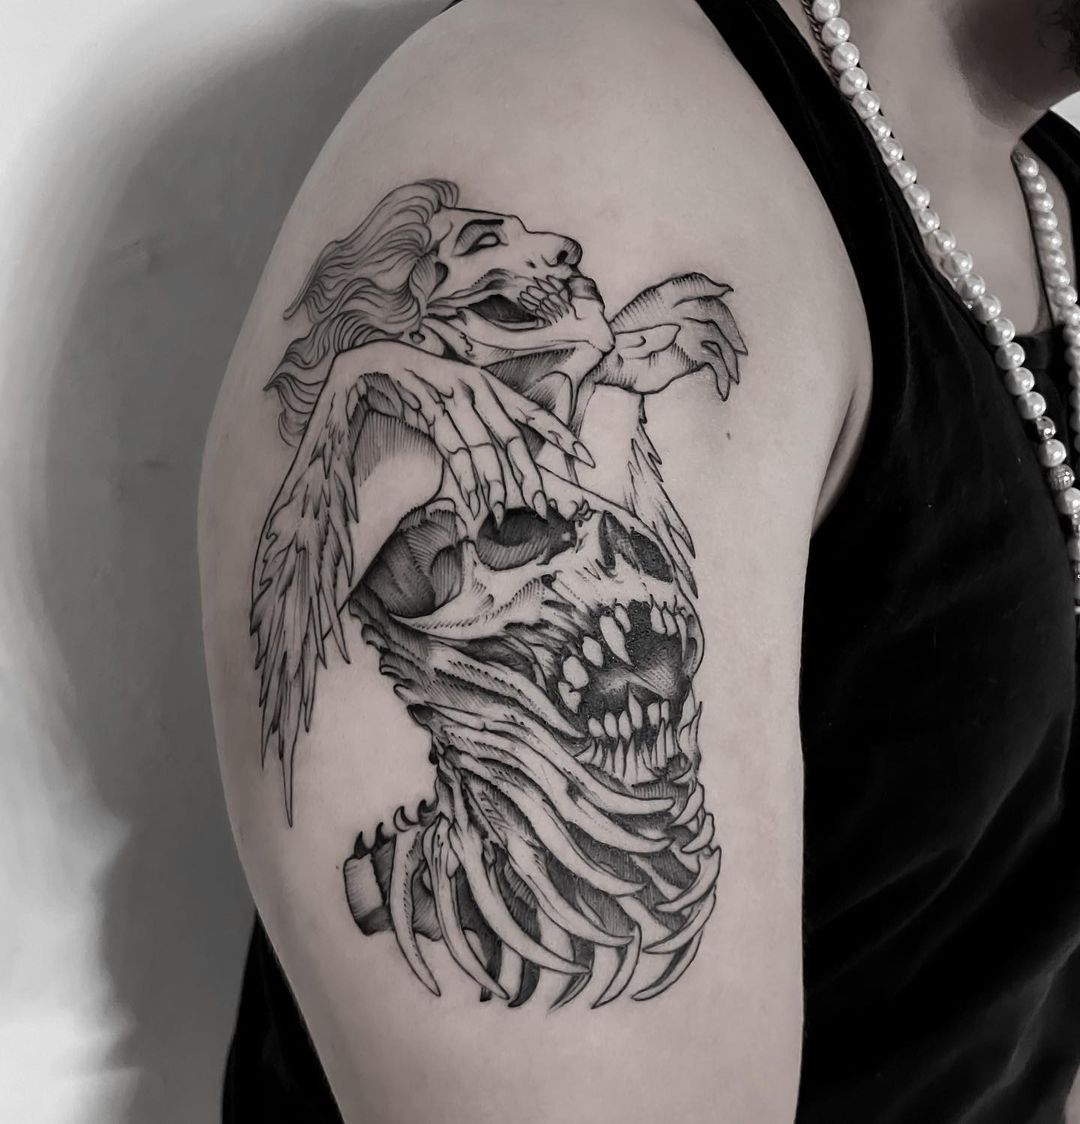 Hydra Tattoo Collective - The Rat King! By @tattoosbyjimmi #hydratattoo # tattoo #tattoos #toronto #tattootoronto #torontotattoo #tattooshop  #rattattoo #ratking #blackandgreytattoo #tattooartist